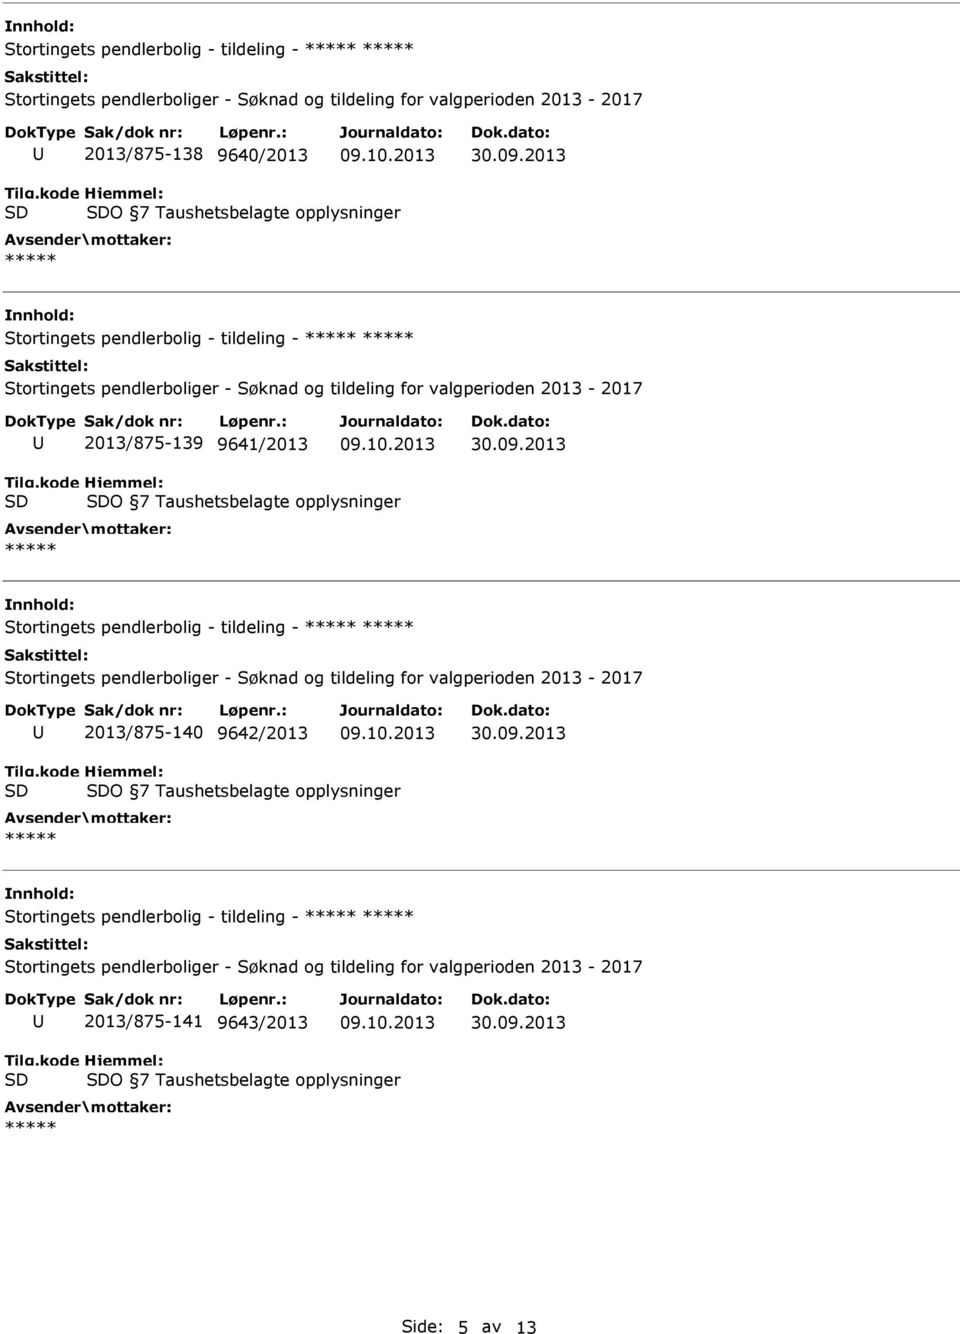 Stortingets pendlerbolig - tildeling - 2013/875-140 9642/2013 O 7 Taushetsbelagte opplysninger